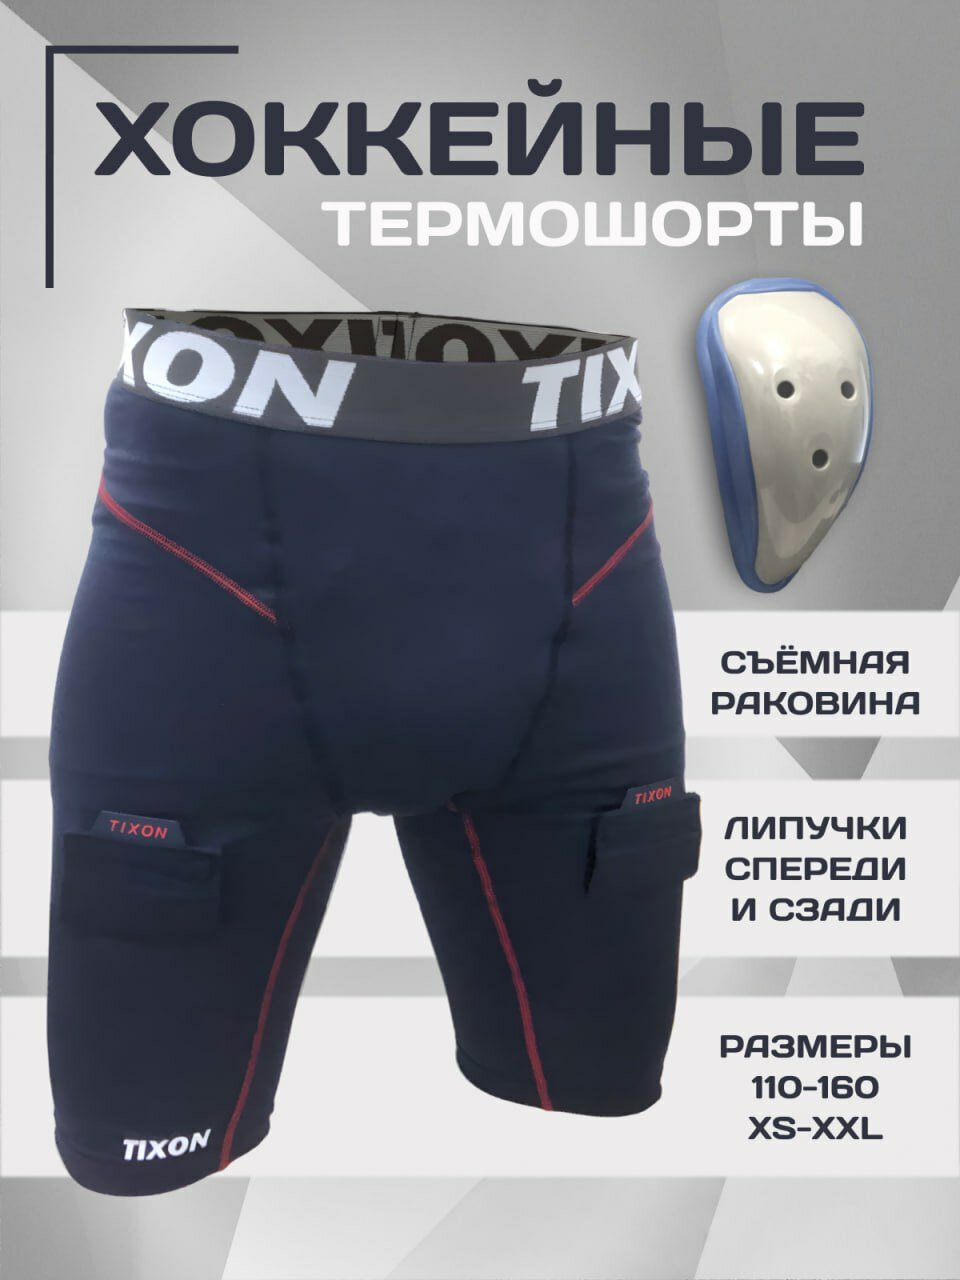 Хоккейные компрессионные шорты с раковиной Tixon (взрослые) S, защита паха Tixon (взрослая)